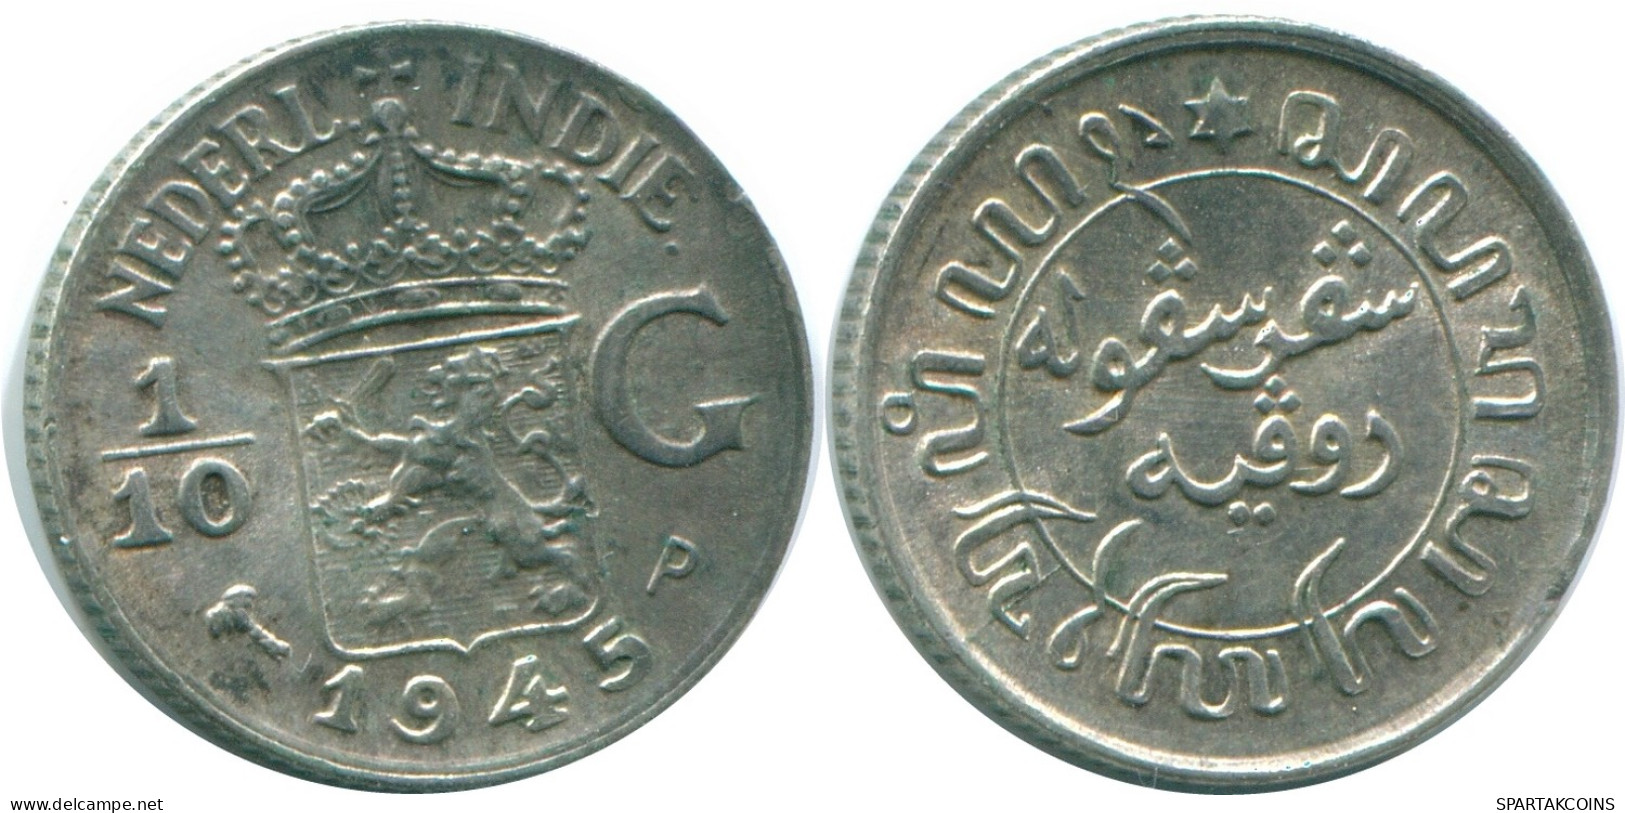 1/10 GULDEN 1945 P NIEDERLANDE OSTINDIEN SILBER Koloniale Münze #NL14064.3.D - Niederländisch-Indien